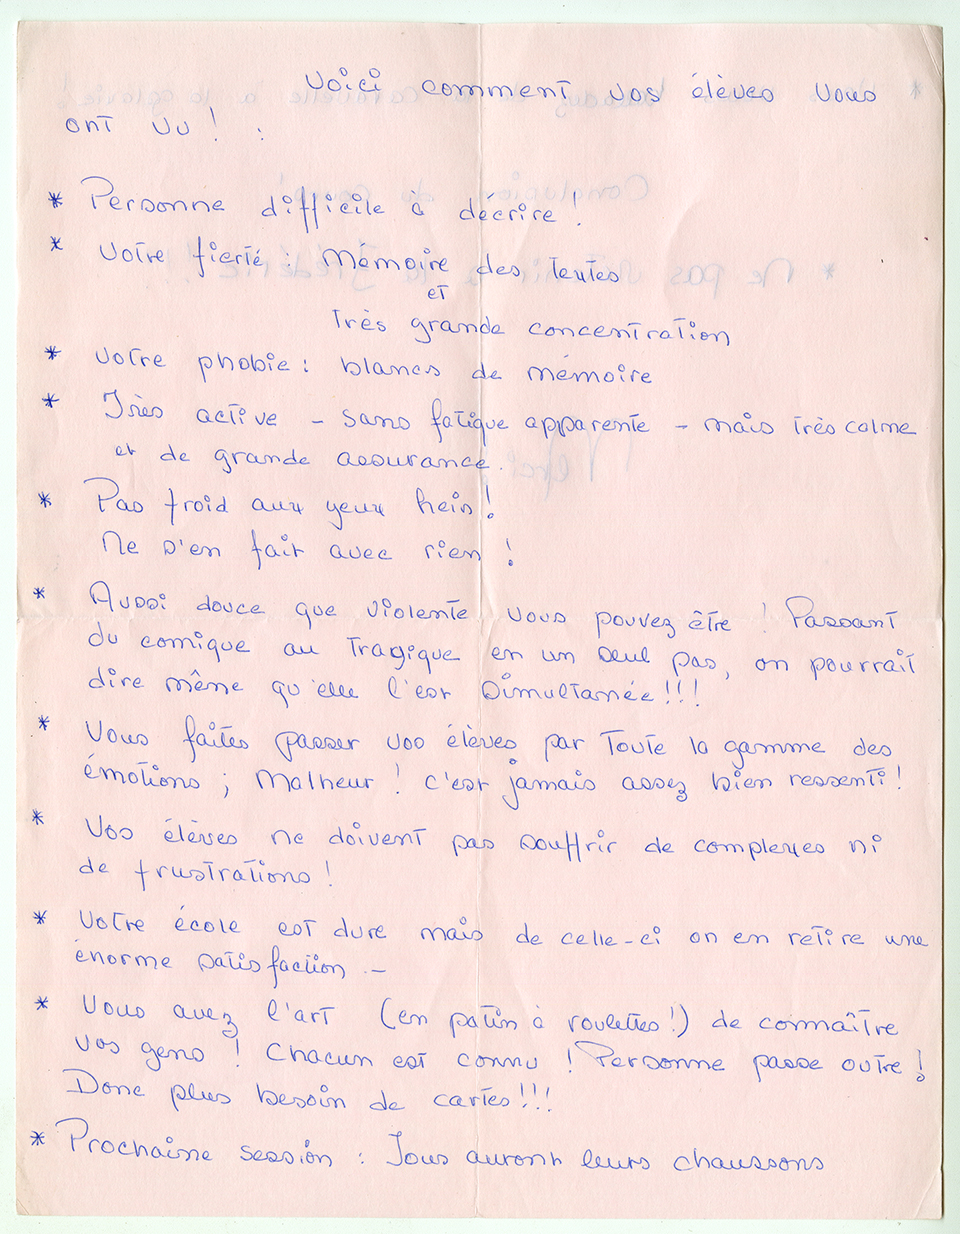 Lettre à Gisèle Barret : « Voici comment vos élèves vous ont vu ! »(sic), [197-]. Archives UdeM, P0419-C-2-D0004